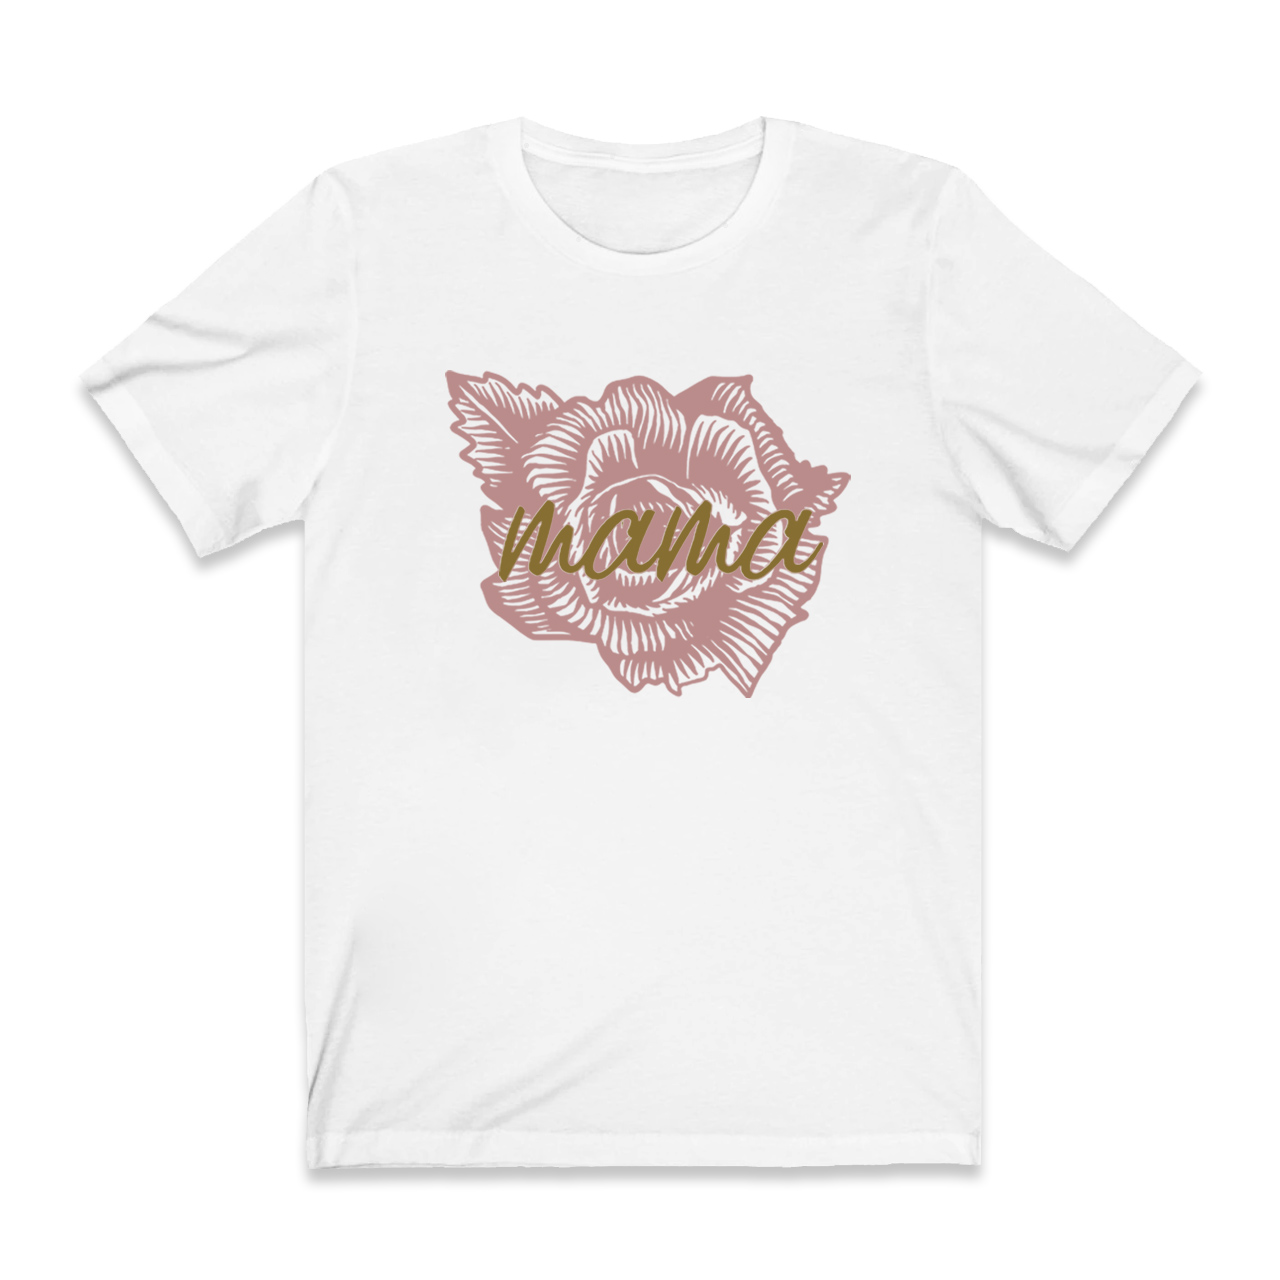 MAMA Flower Design Classic Mom Shirt